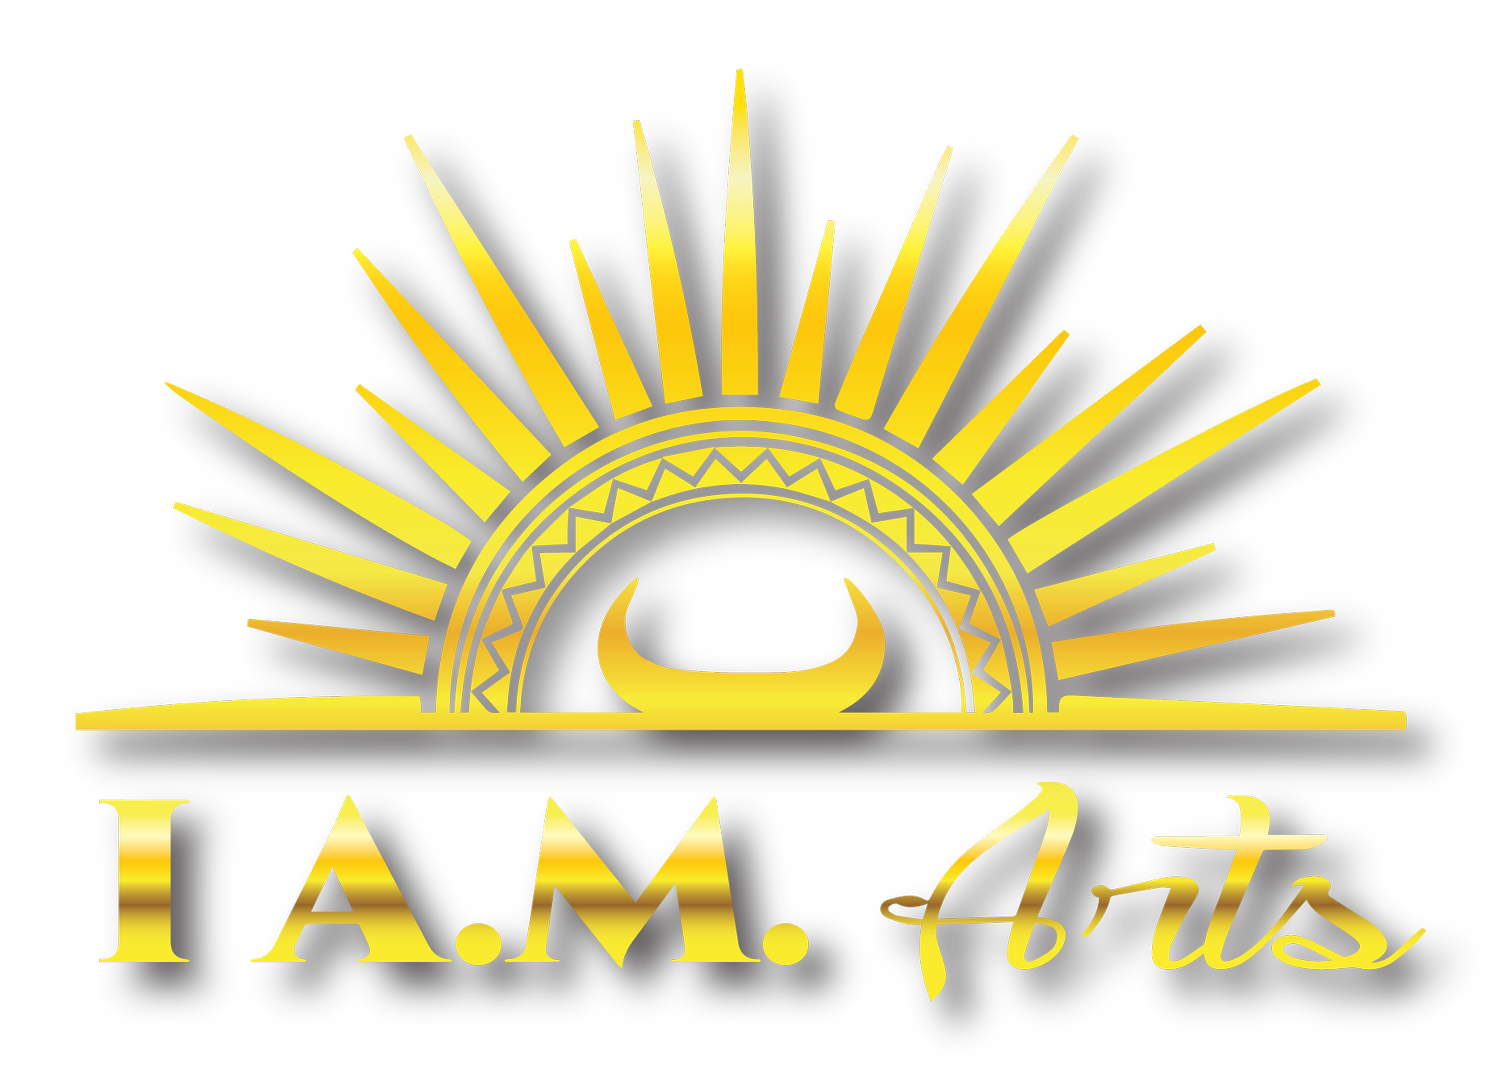 I A.M. Arts